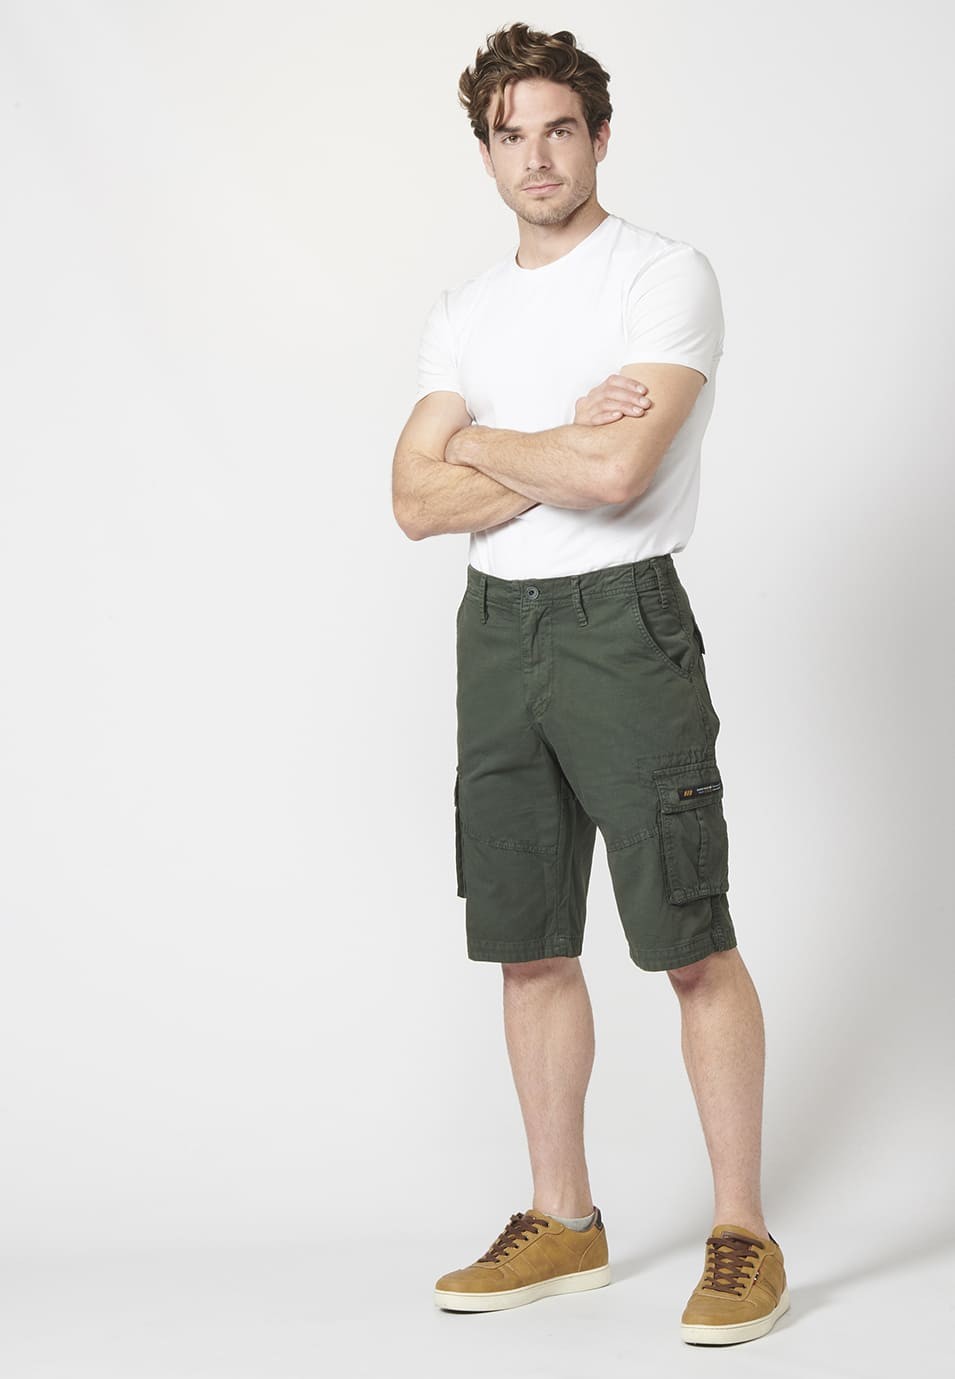 Bermuda pantalón corto estilo cargo para hombre con seis bolsillos 7